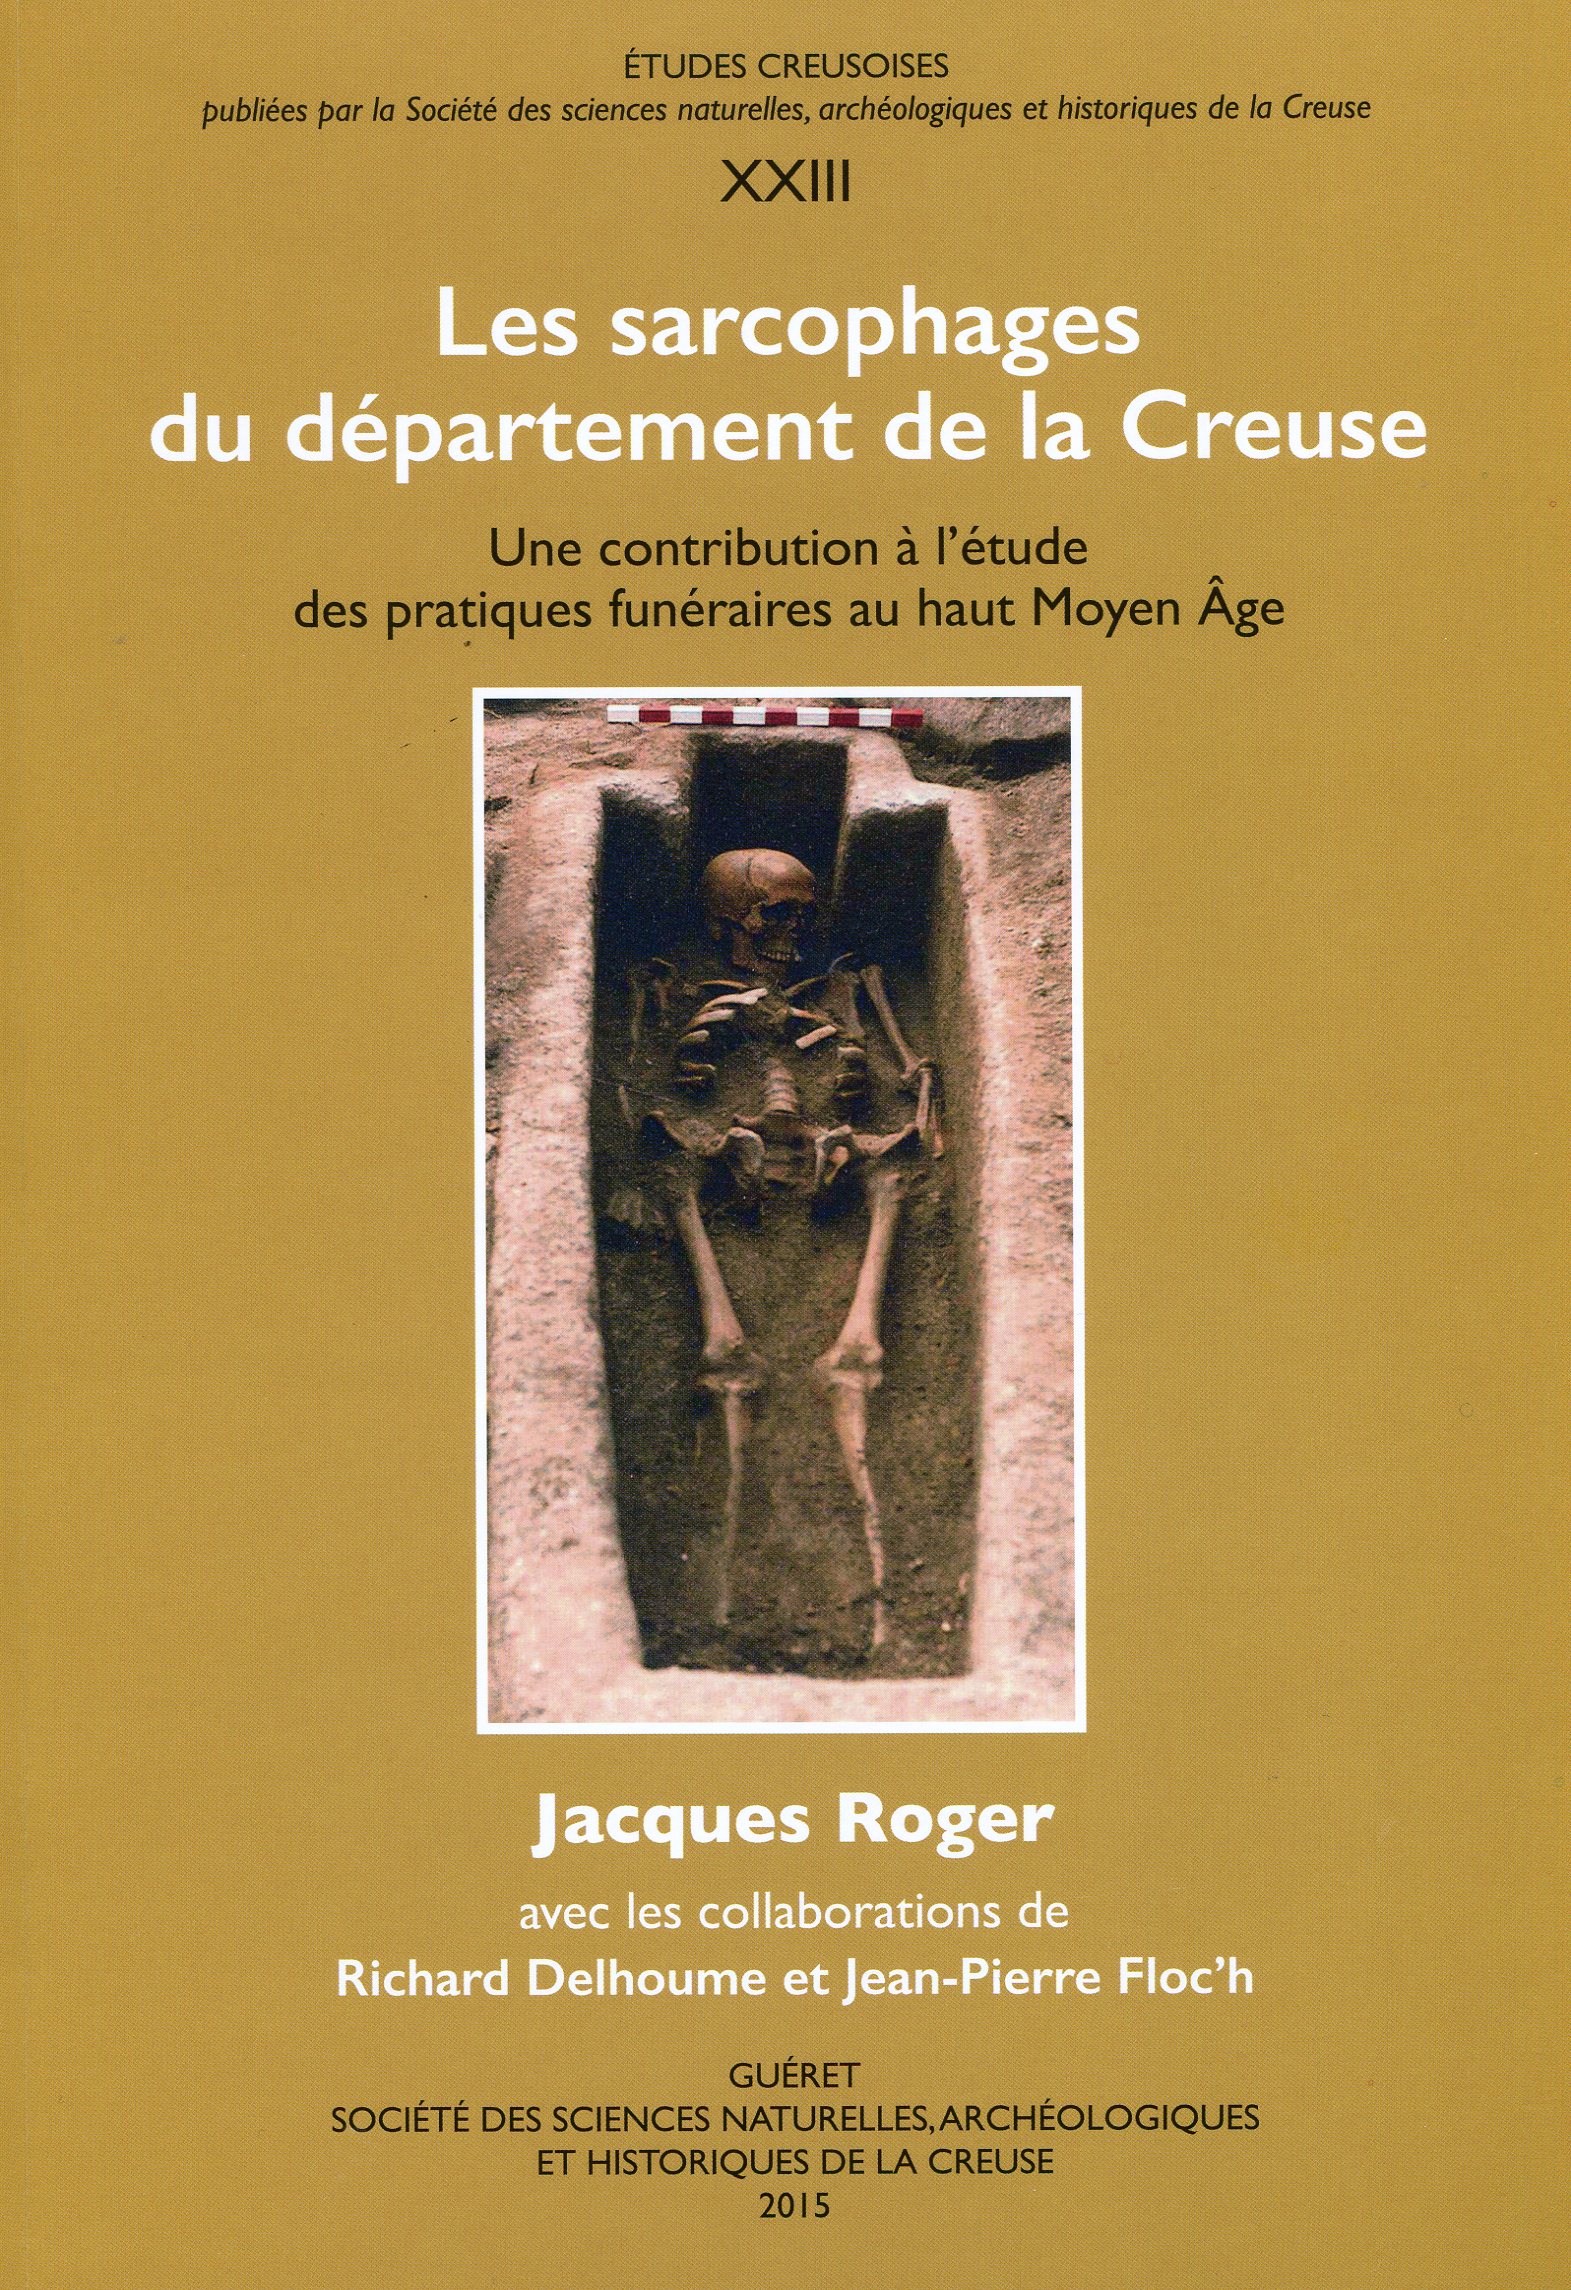 Les sarcophages du département de la Creuse. Une contribution à l'étude des pratiques funéraires au haut Moyen Age, 2015, 314 p., nbr. ill.